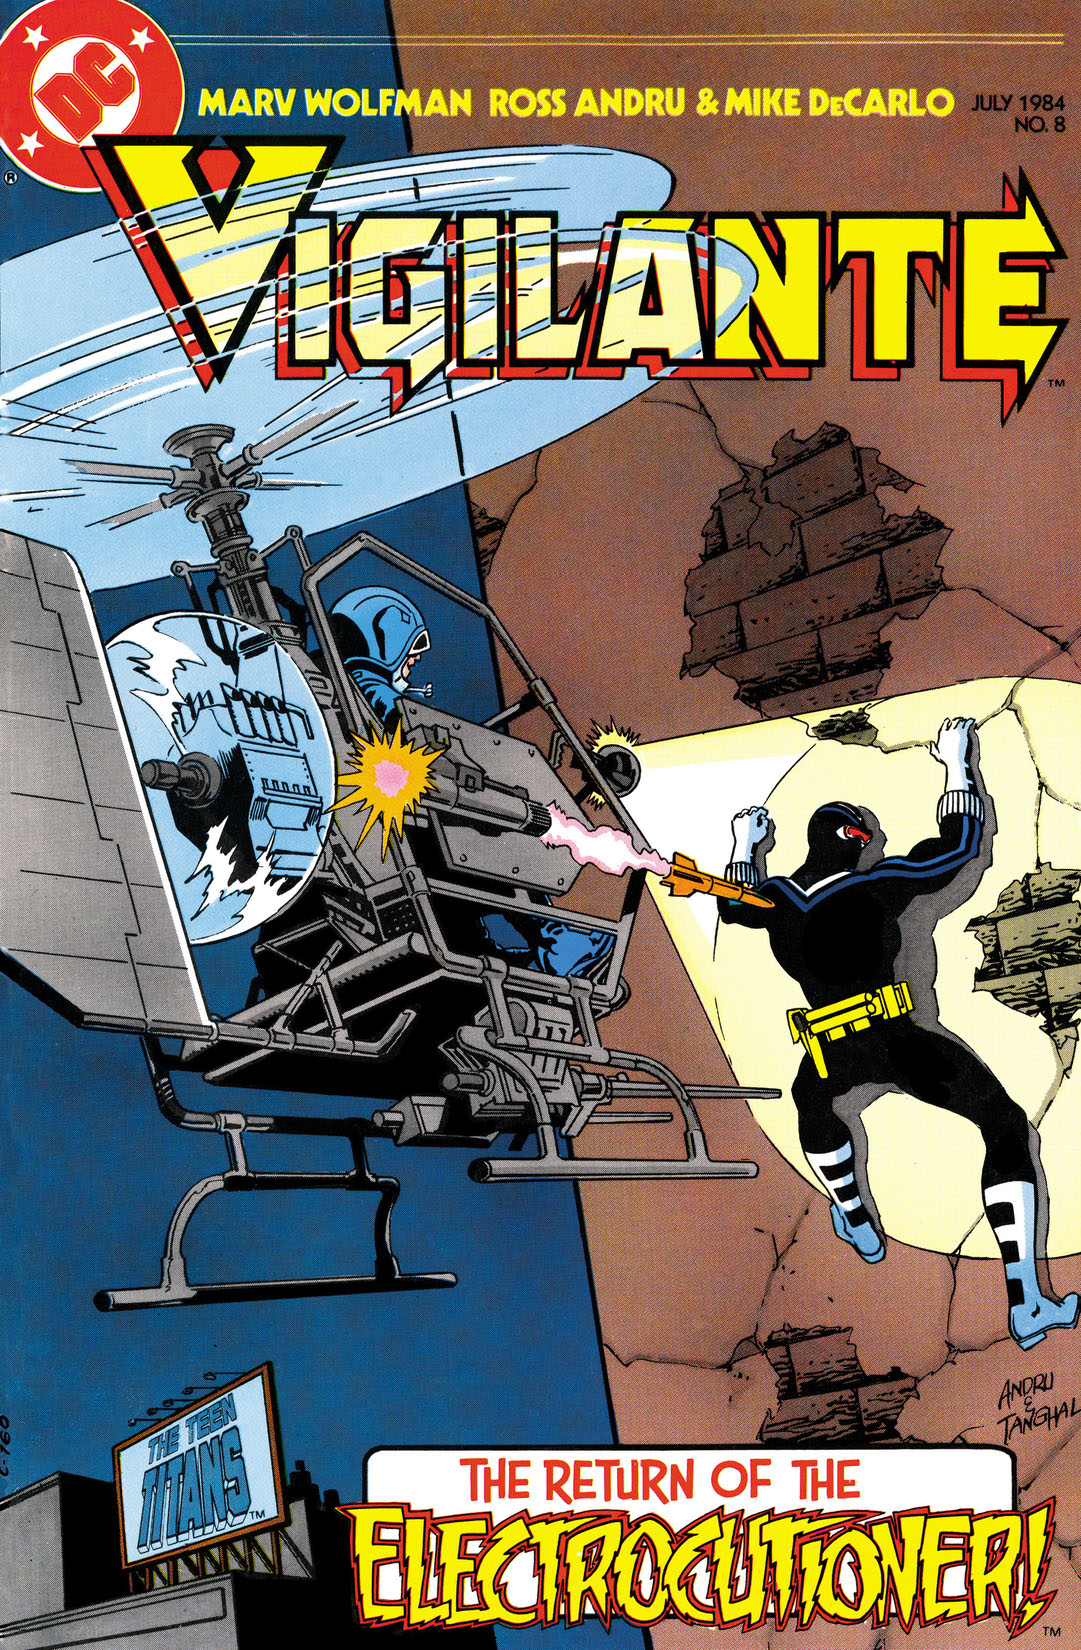 The Vigilante #8 preview images